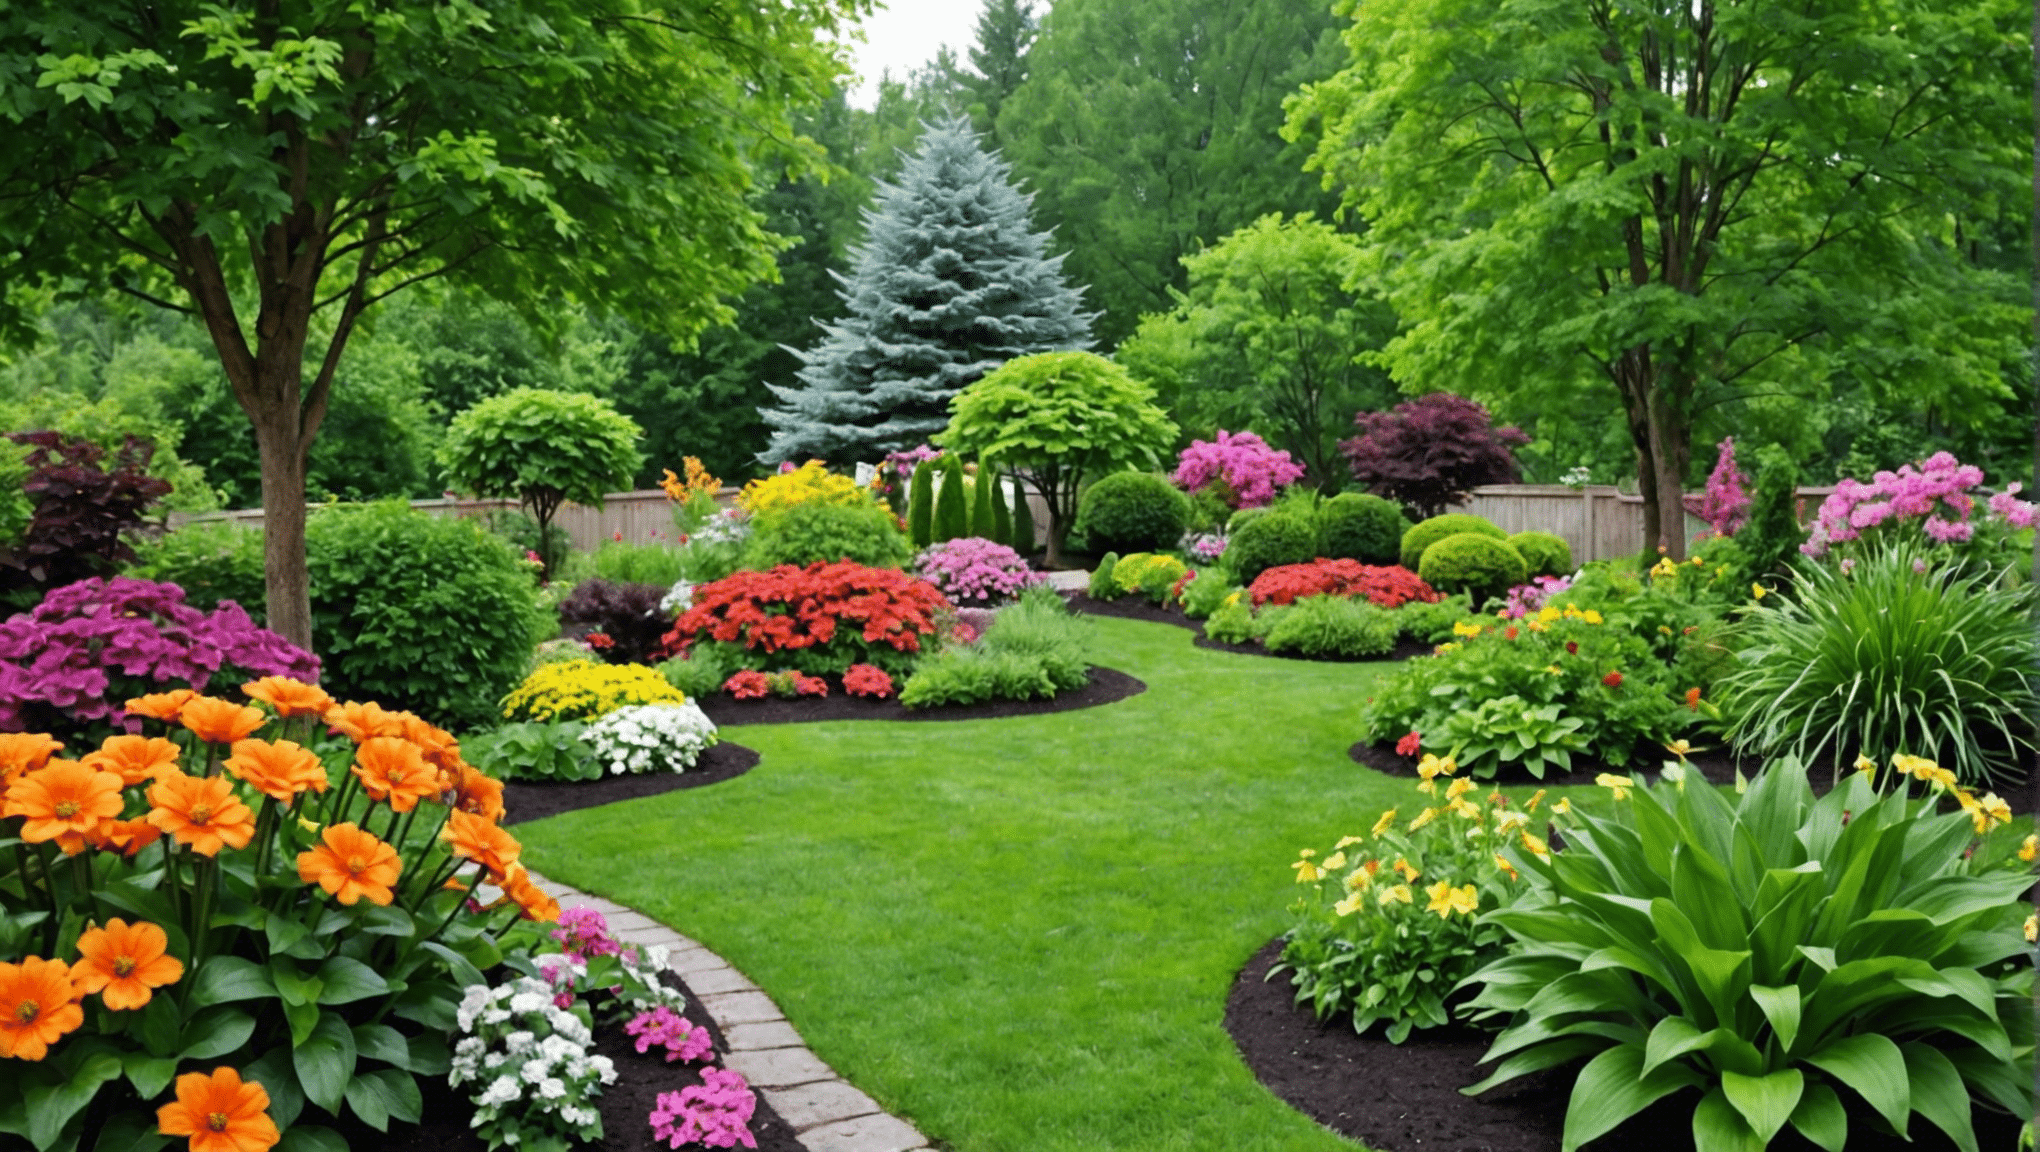 upptäck ett brett utbud av högkvalitativa trädgårdsfrön för din episka trädgård. väck liv i din trädgård med vår förstklassiga frökollektion.